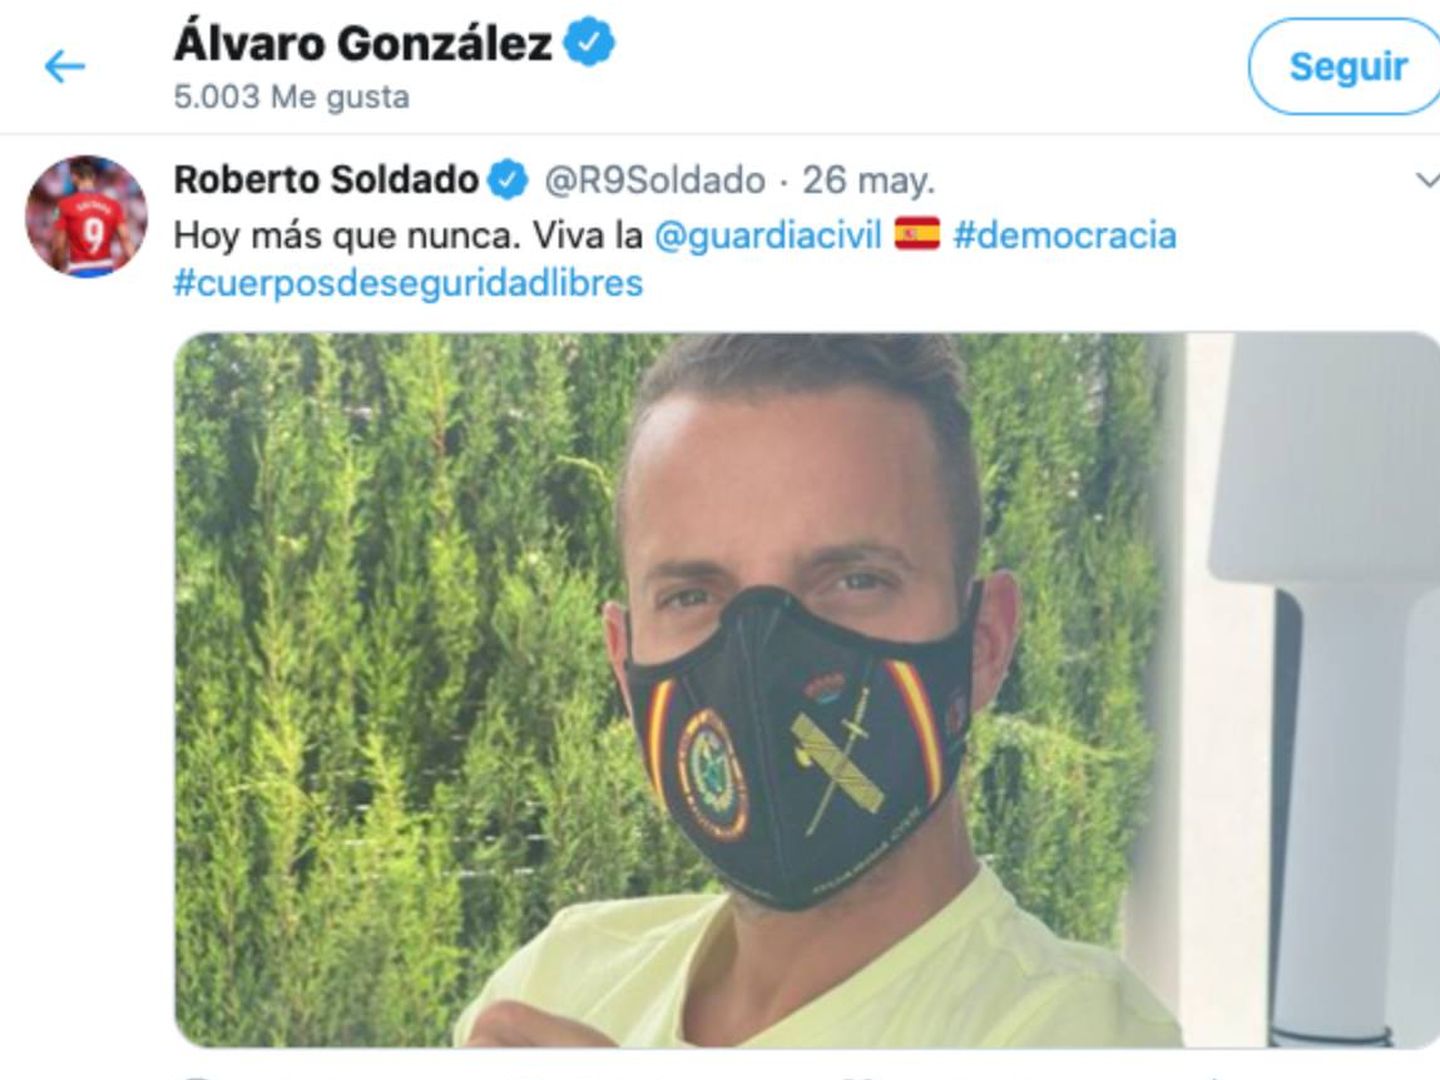 El 'me gusta' de Álvaro González a Roberto Solado